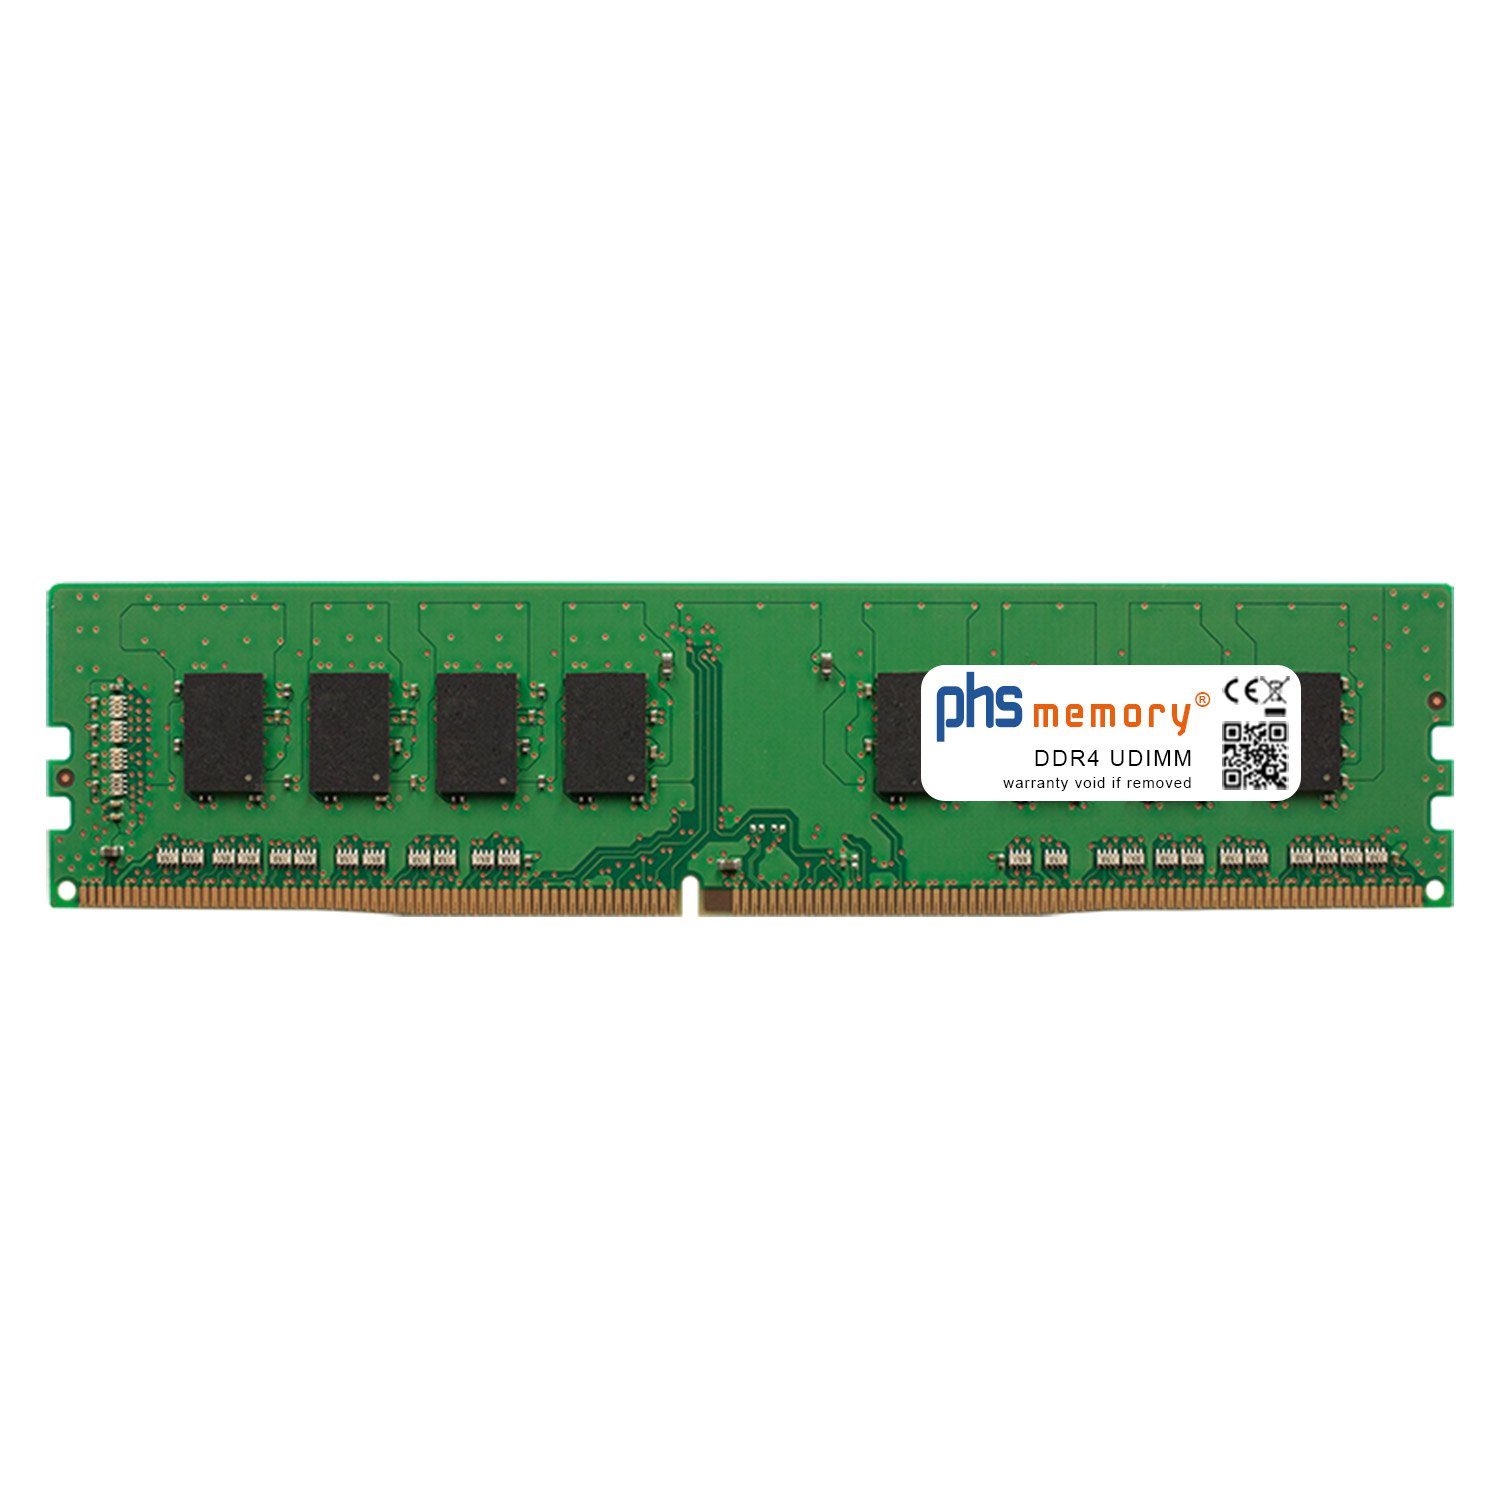 PHS-memory RAM für ASRock TRX40 Taichi Arbeitsspeicher